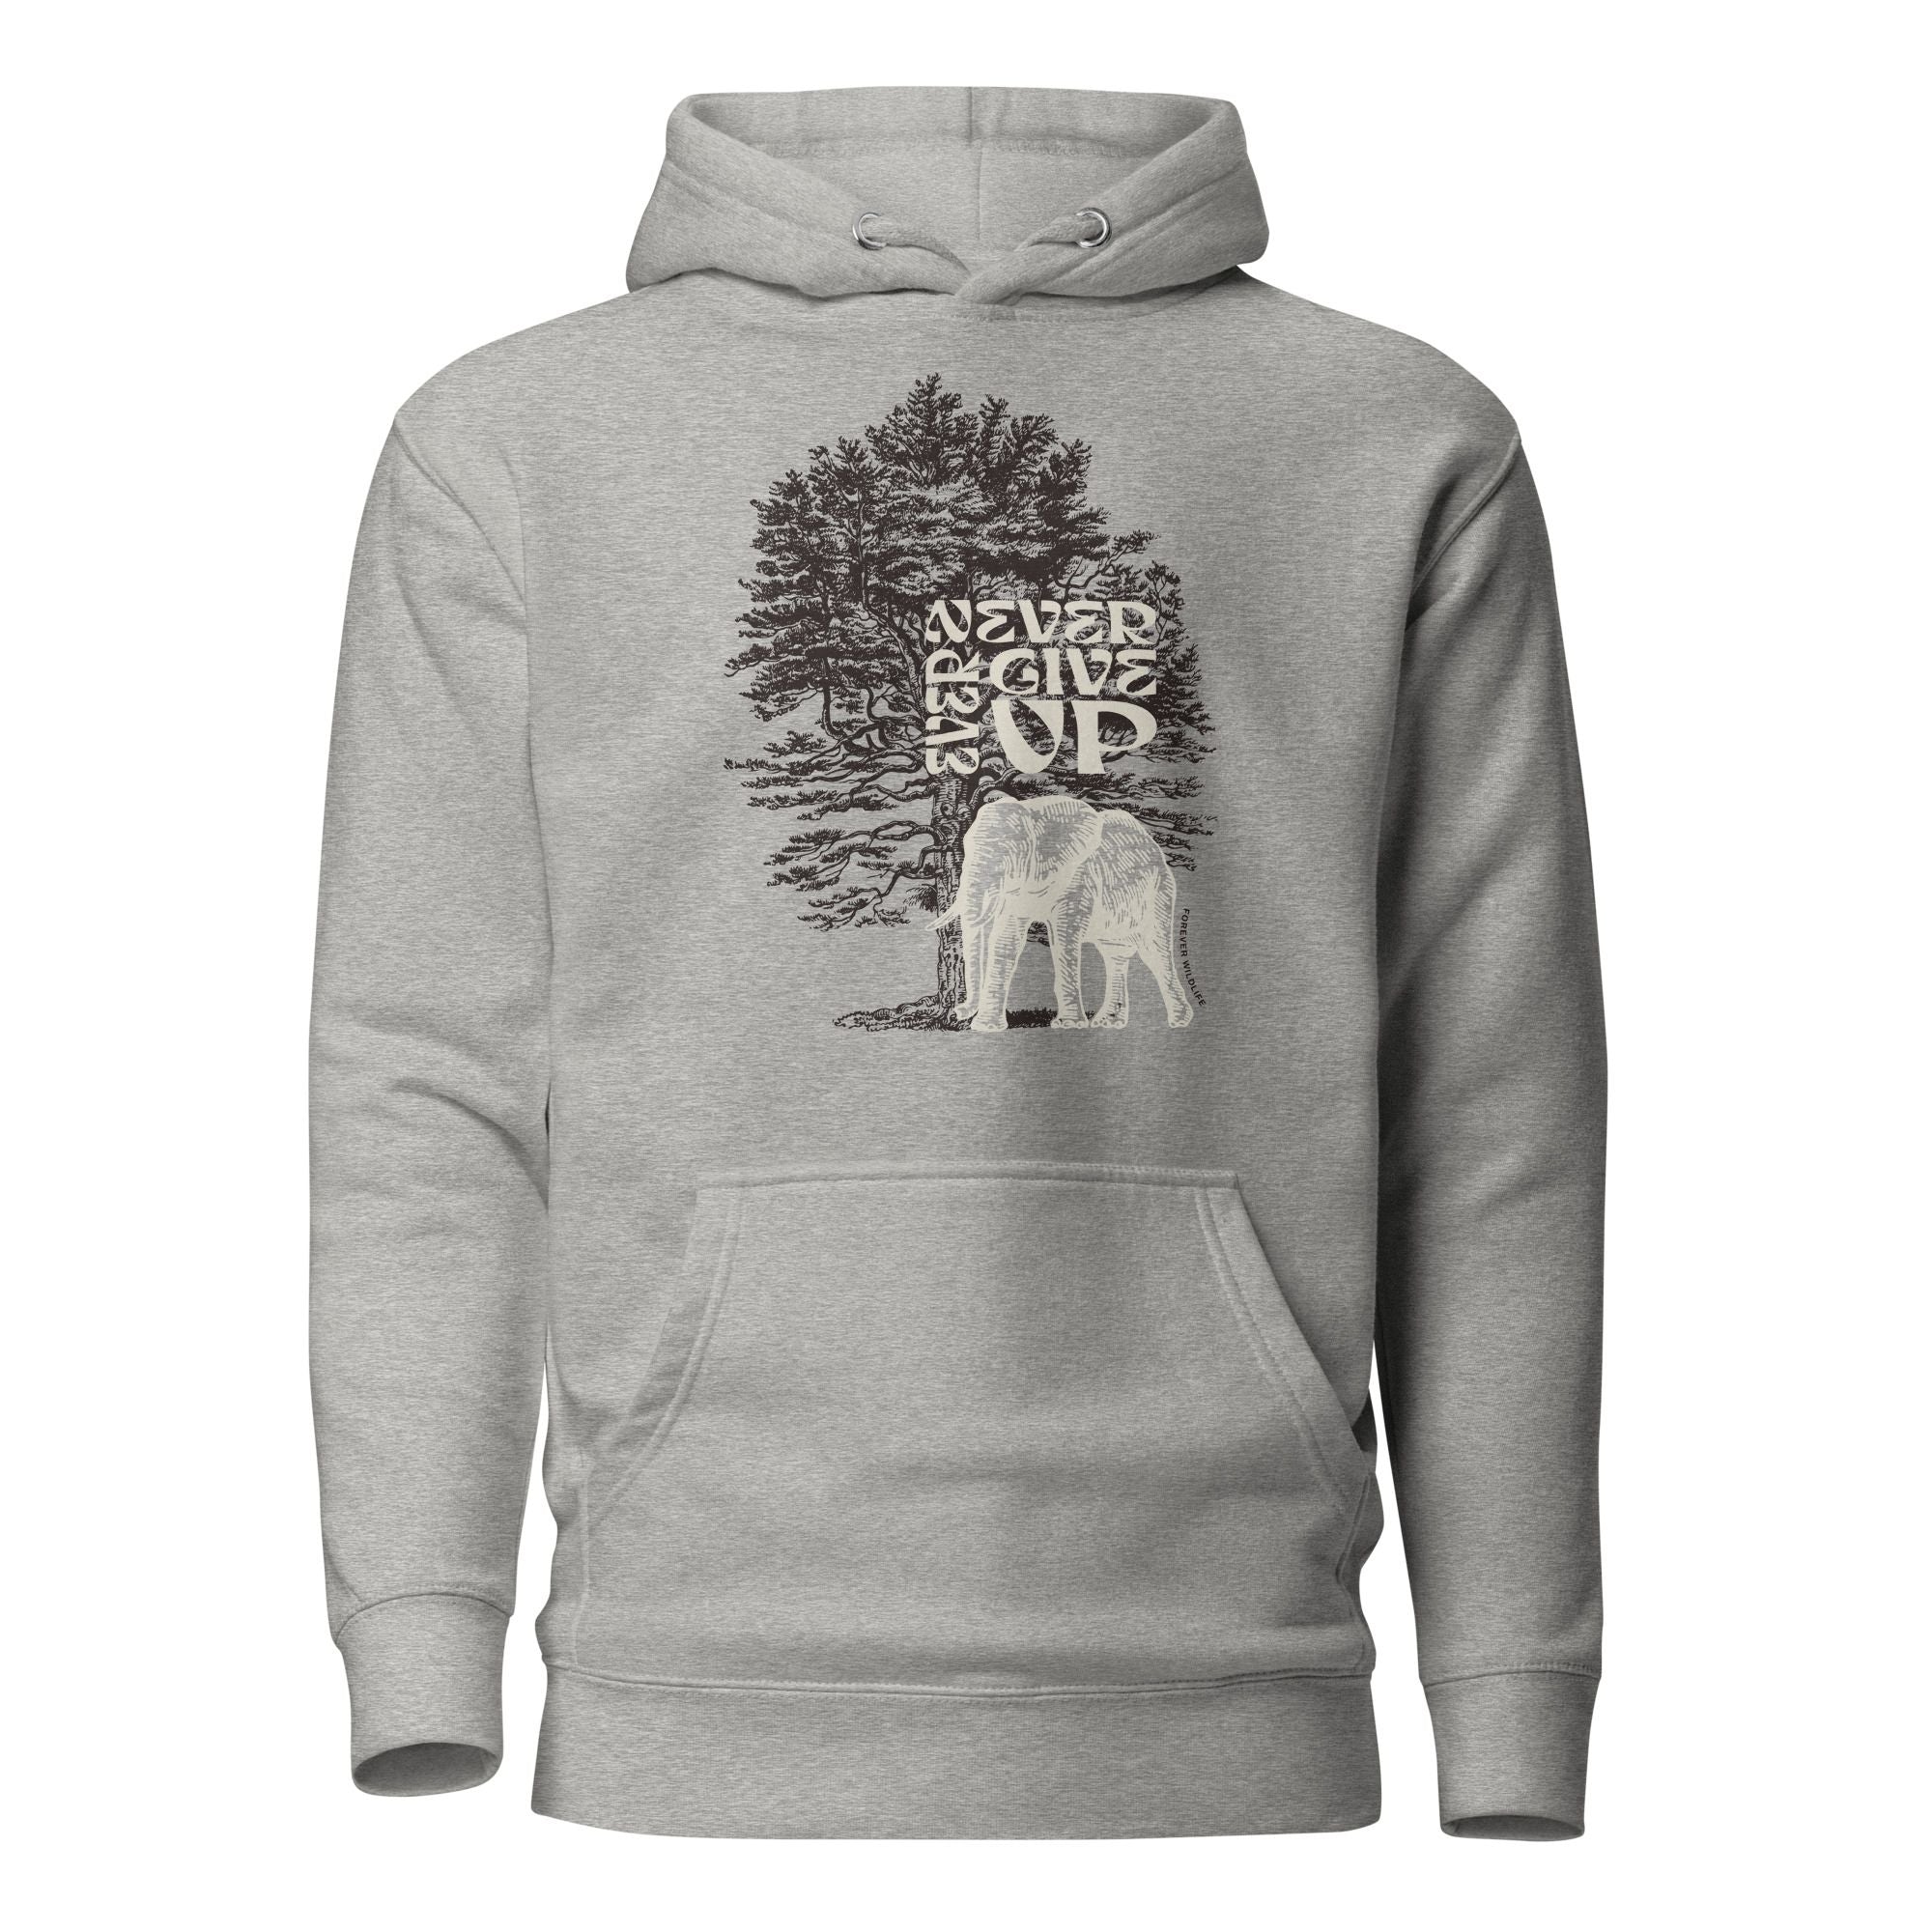 Elephant Hoodie in Grey – Premium Wildlife Animal Inspirational Hoodie Design, part of Wildlife Hoodies & Clothing from Forever Wildlife